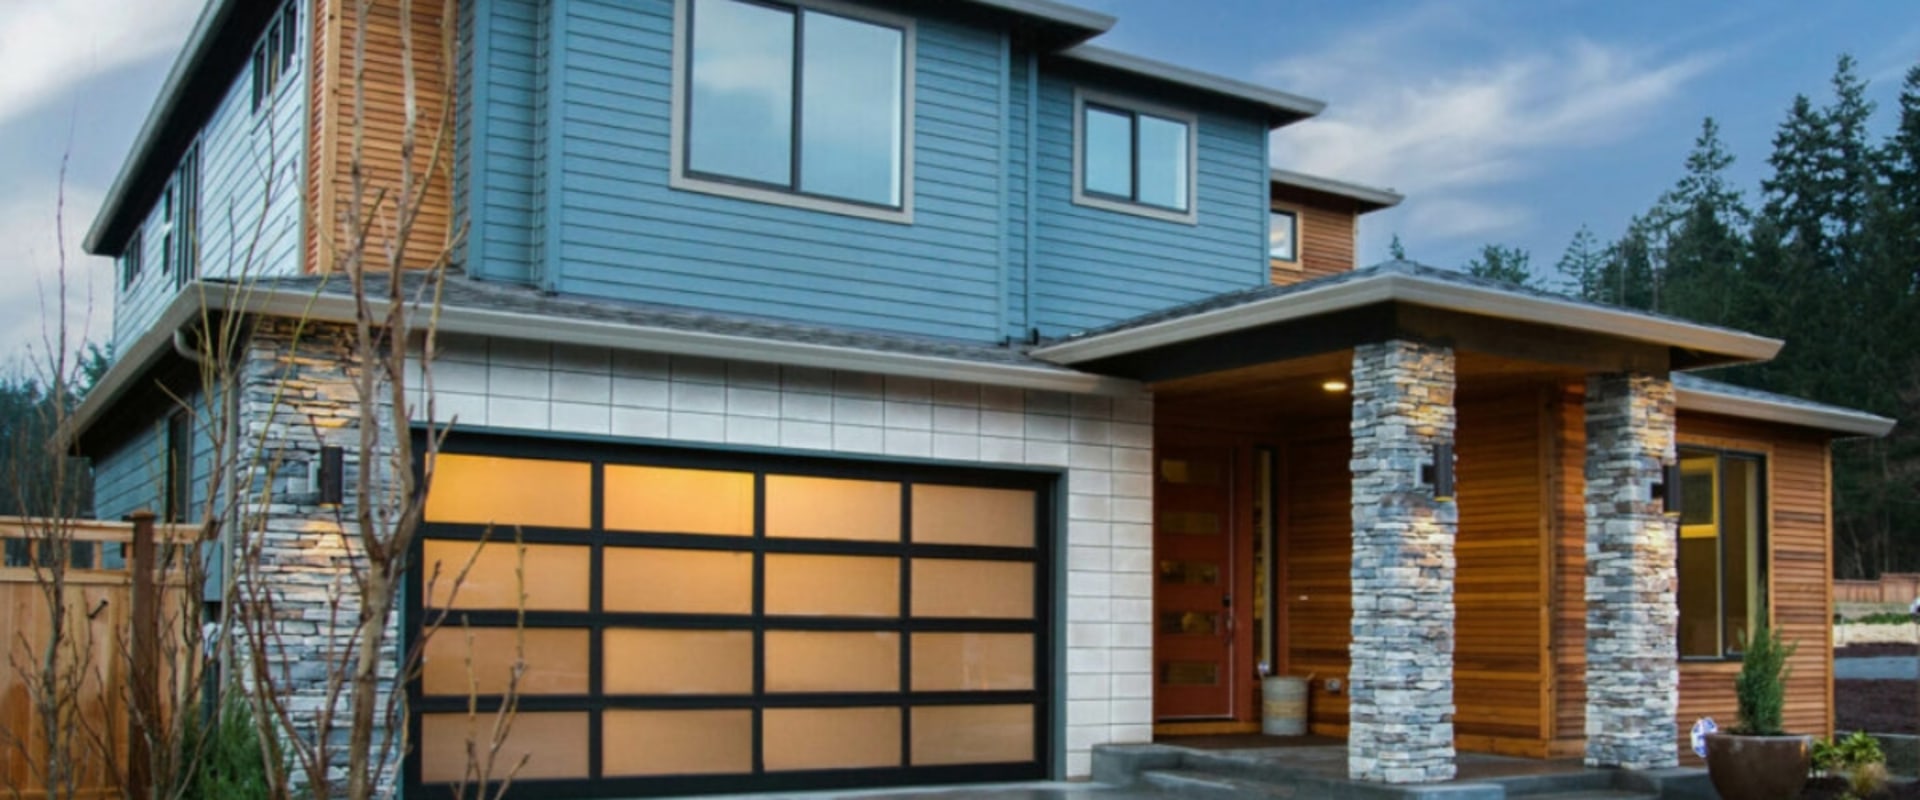 Solar-Powered Garage Doors